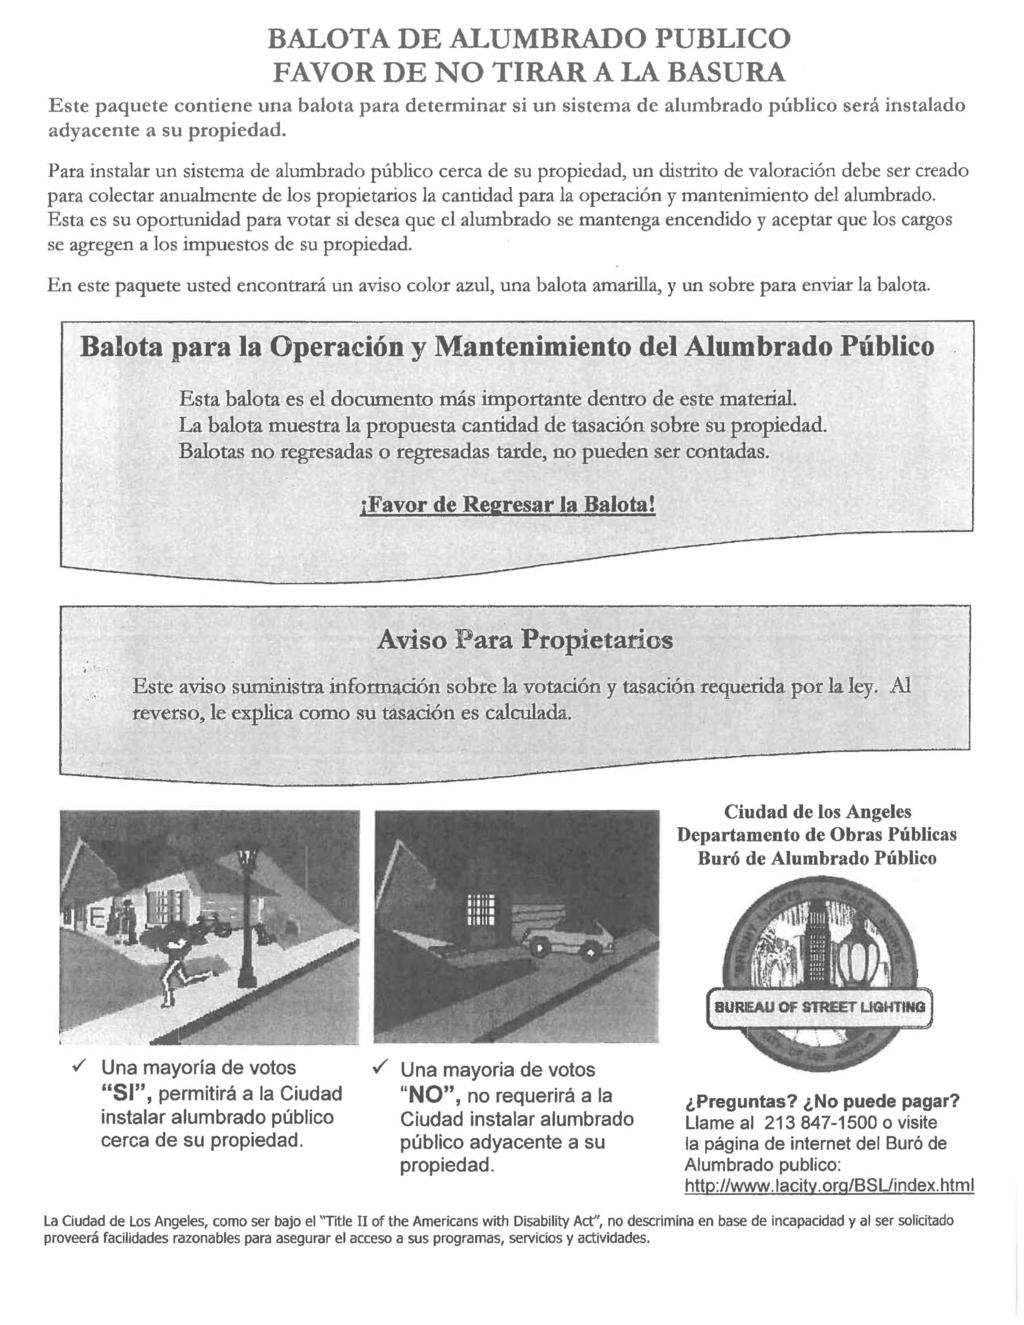 BALTA DE ALUMBRAD PUBLIC FAVR DE N TIRAR A LA BASURA Este paquete contiene una balota para determinar si un sistema de alumbrado publico sera instalado adyacente a su propiedad.